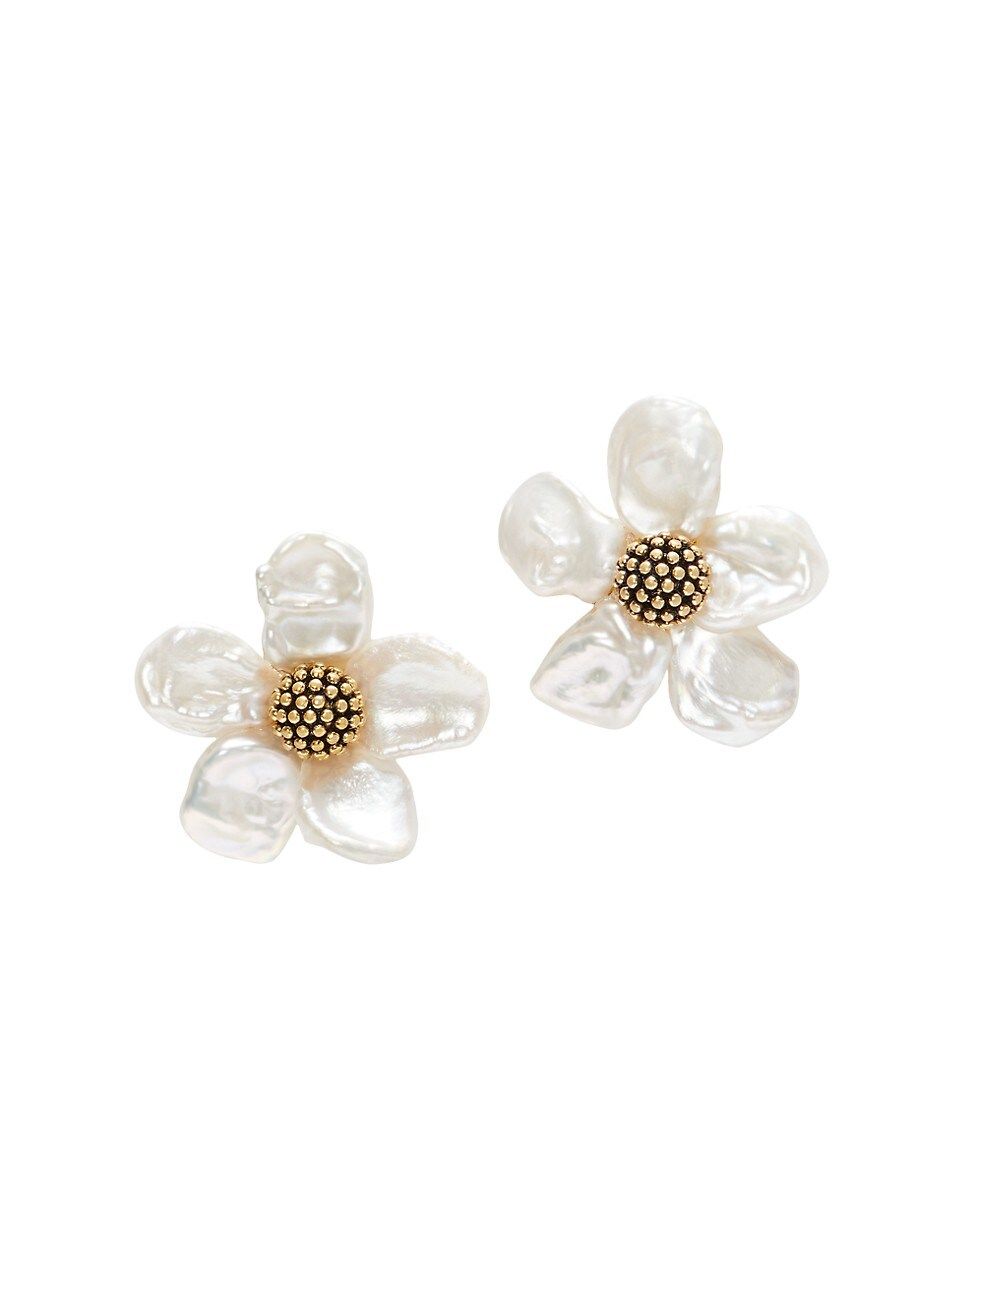 Goldtone & Freshwater Pearl Flower Stud Earrings | Saks Fifth Avenue